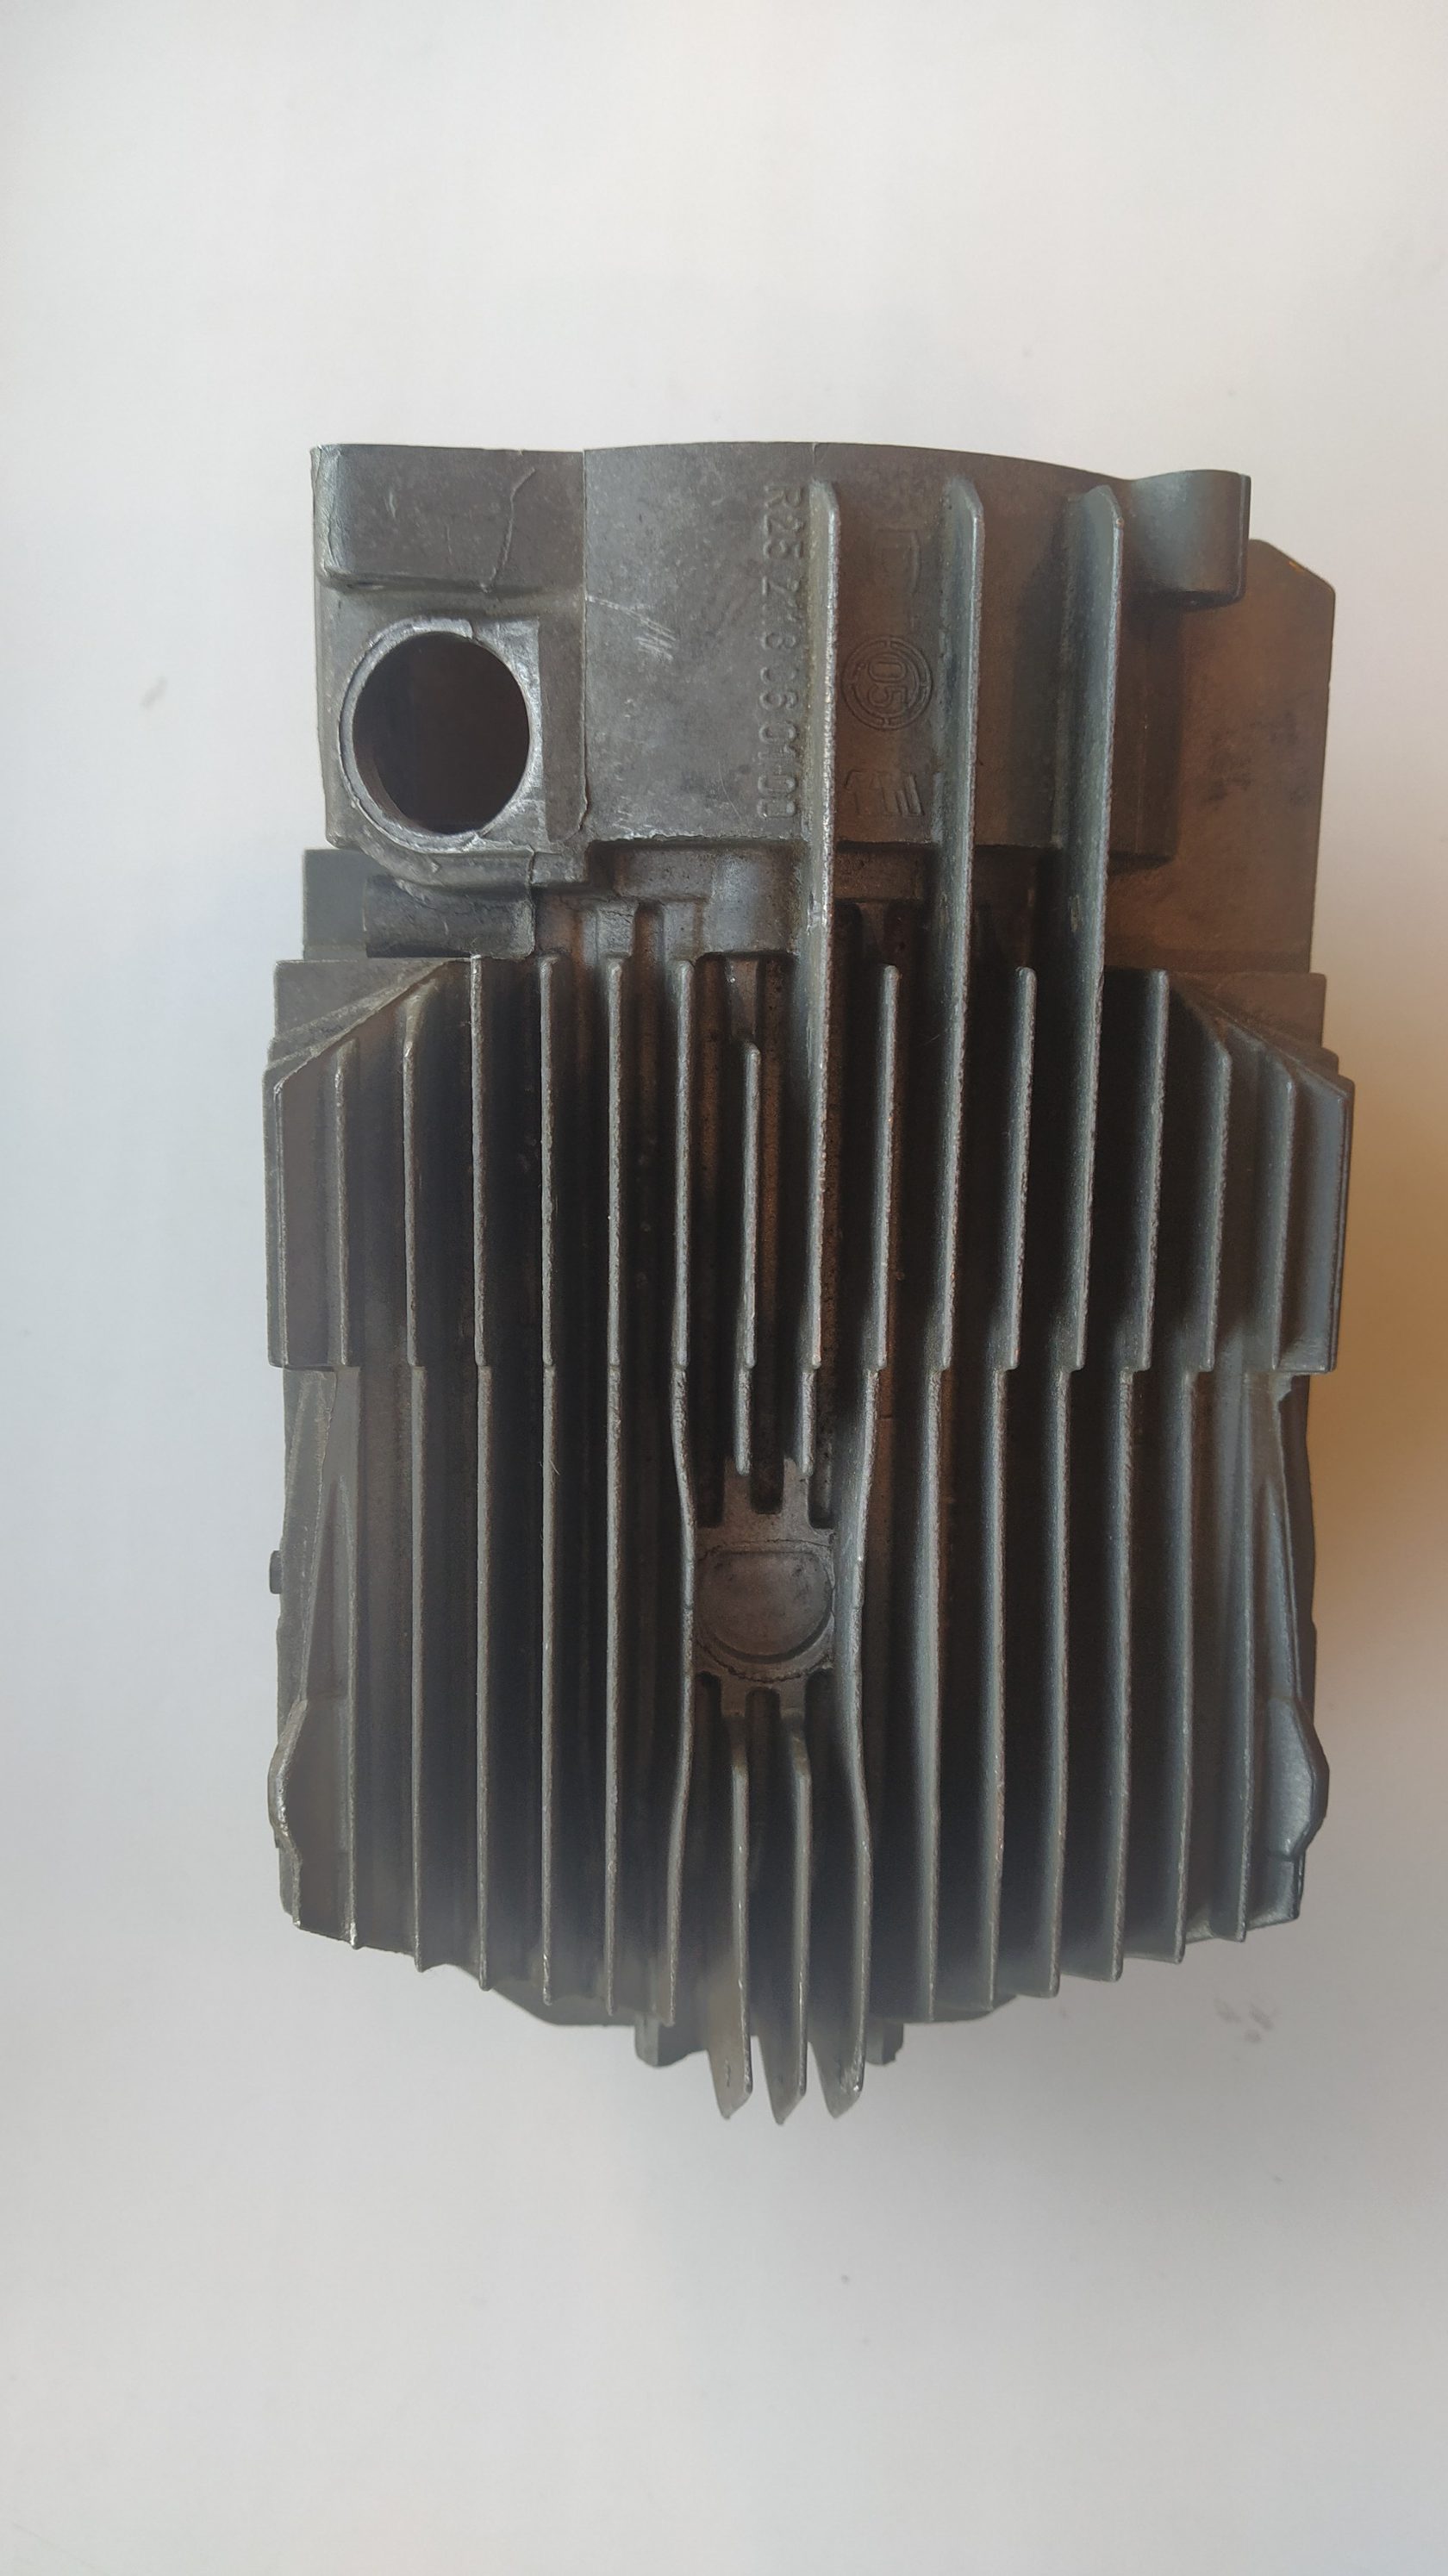 Камера сгорания, котел, теплообменник Eberspacher Airtronic D4 R25.2113.060100